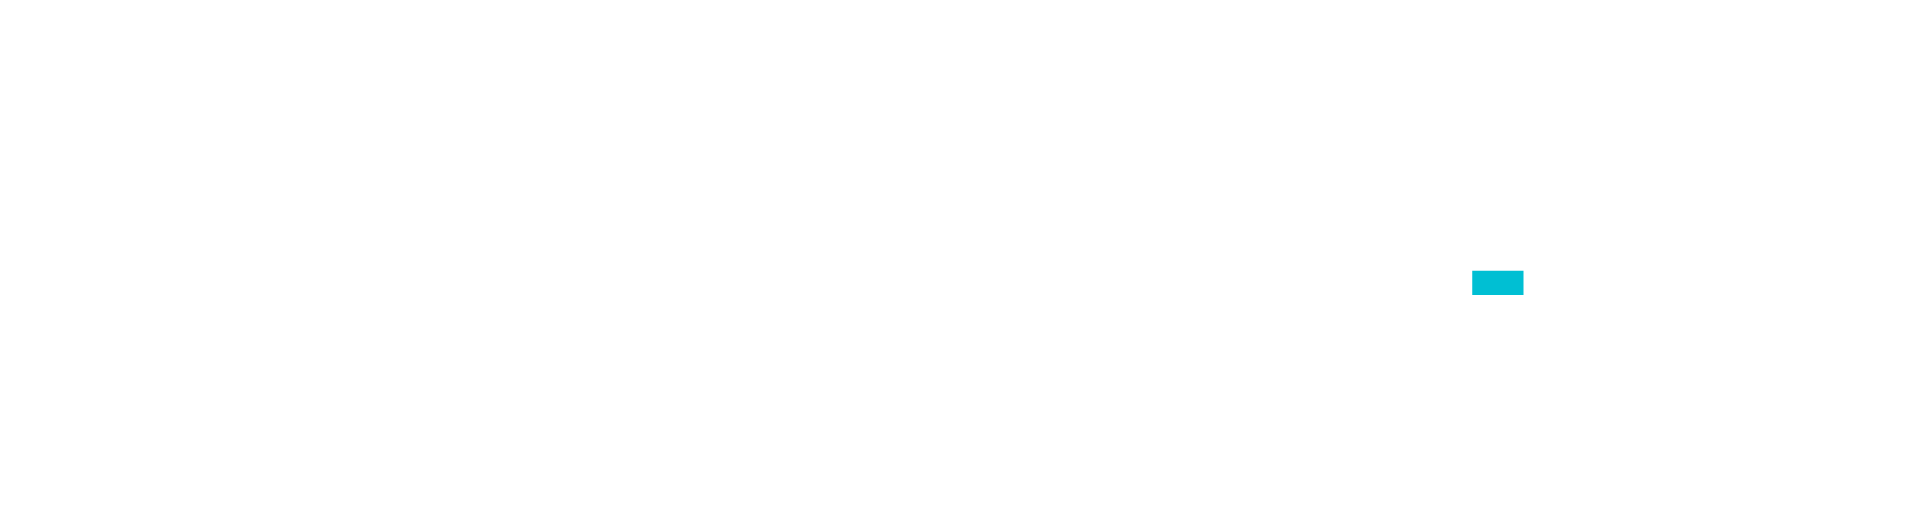 USEN logo